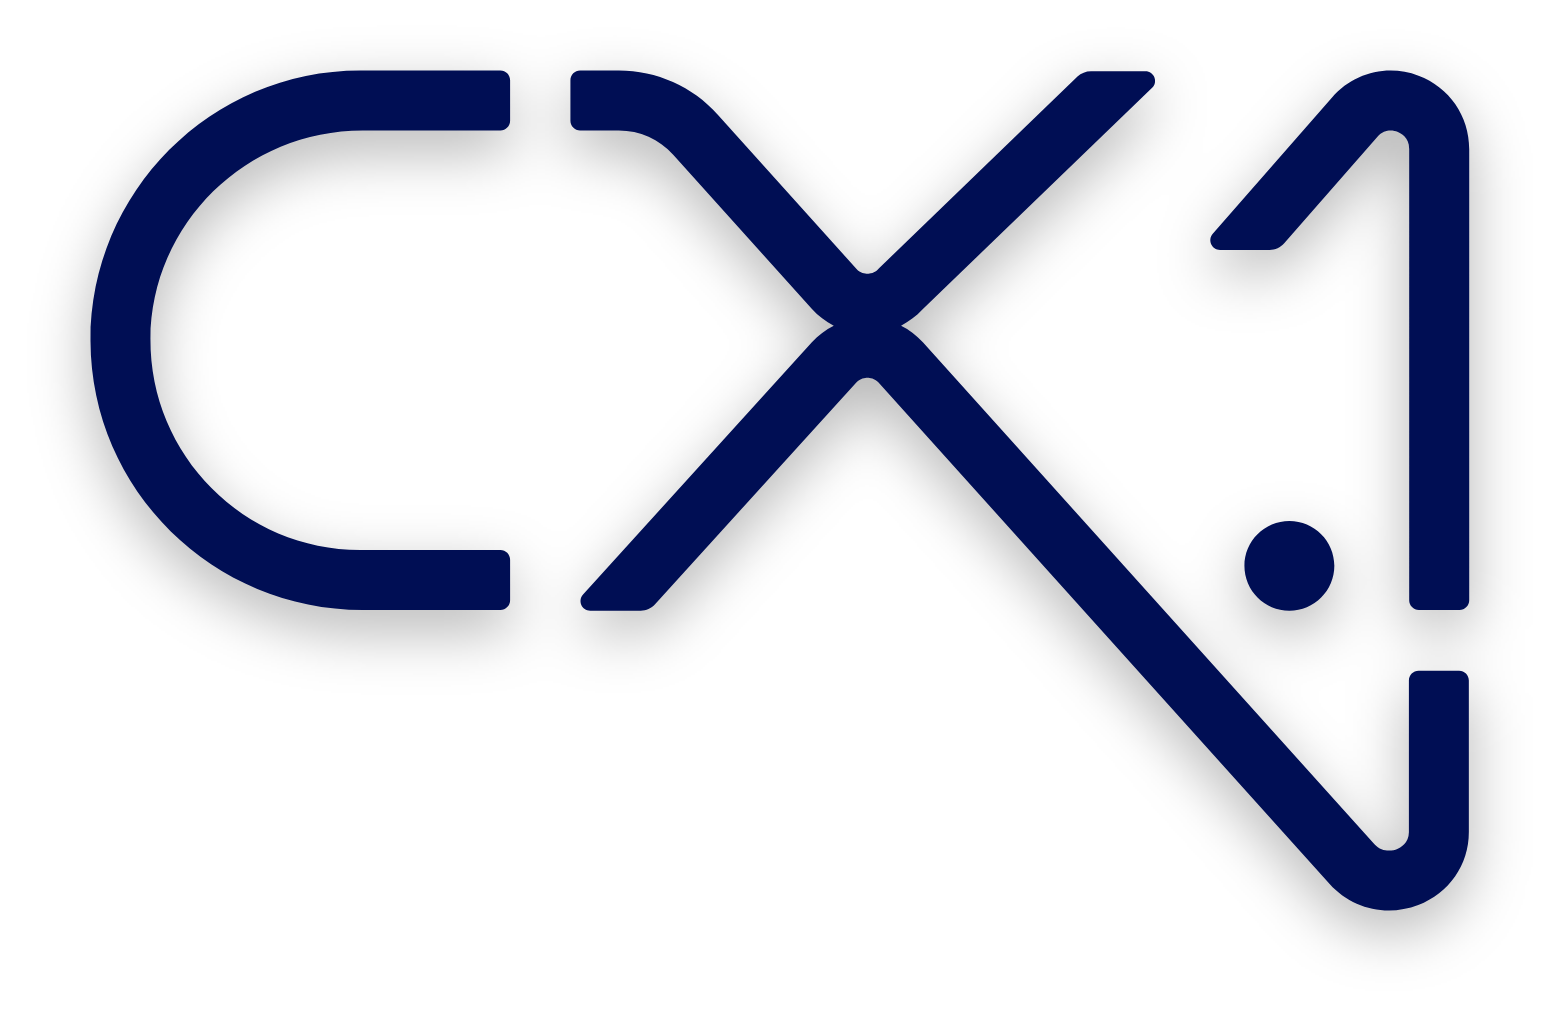 CX.1